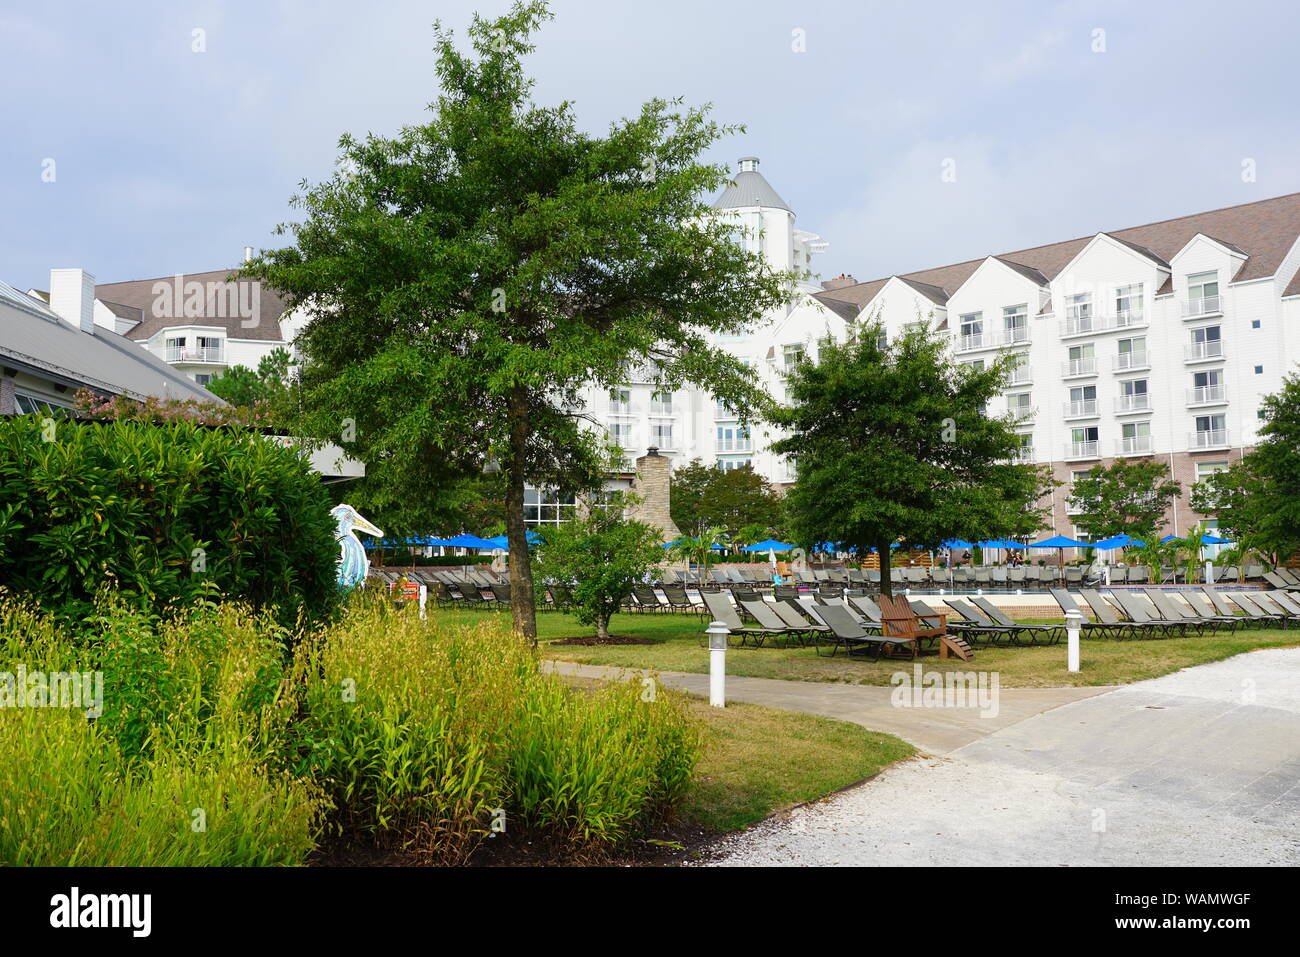 CAMBRIDGE, MD -15 agosto 2019- Vista dell'Hyatt Regency Chesapeake Bay Golf Resort, Spa e Marina, un hotel distintivo sul fiume Choptank in Cambridge, Foto Stock